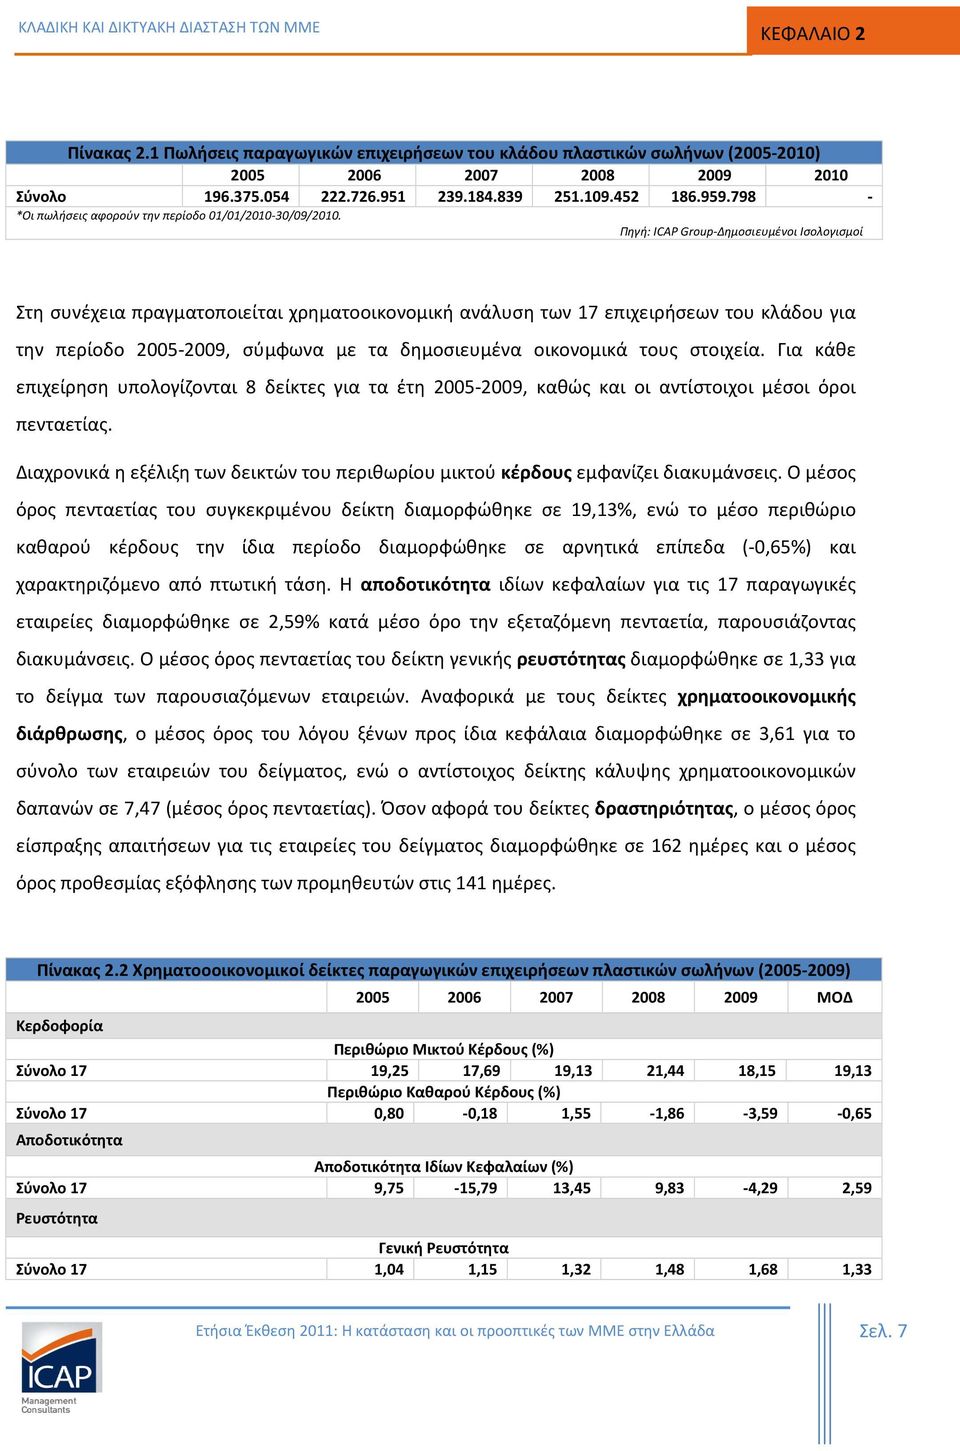 Πηγή: ICAP Group-Δημοσιευμένοι Ισολογισμοί Στη συνέχεια πραγματοποιείται χρηματοοικονομική ανάλυση των 17 επιχειρήσεων του κλάδου για την περίοδο 2005-2009, σύμφωνα με τα δημοσιευμένα οικονομικά τους